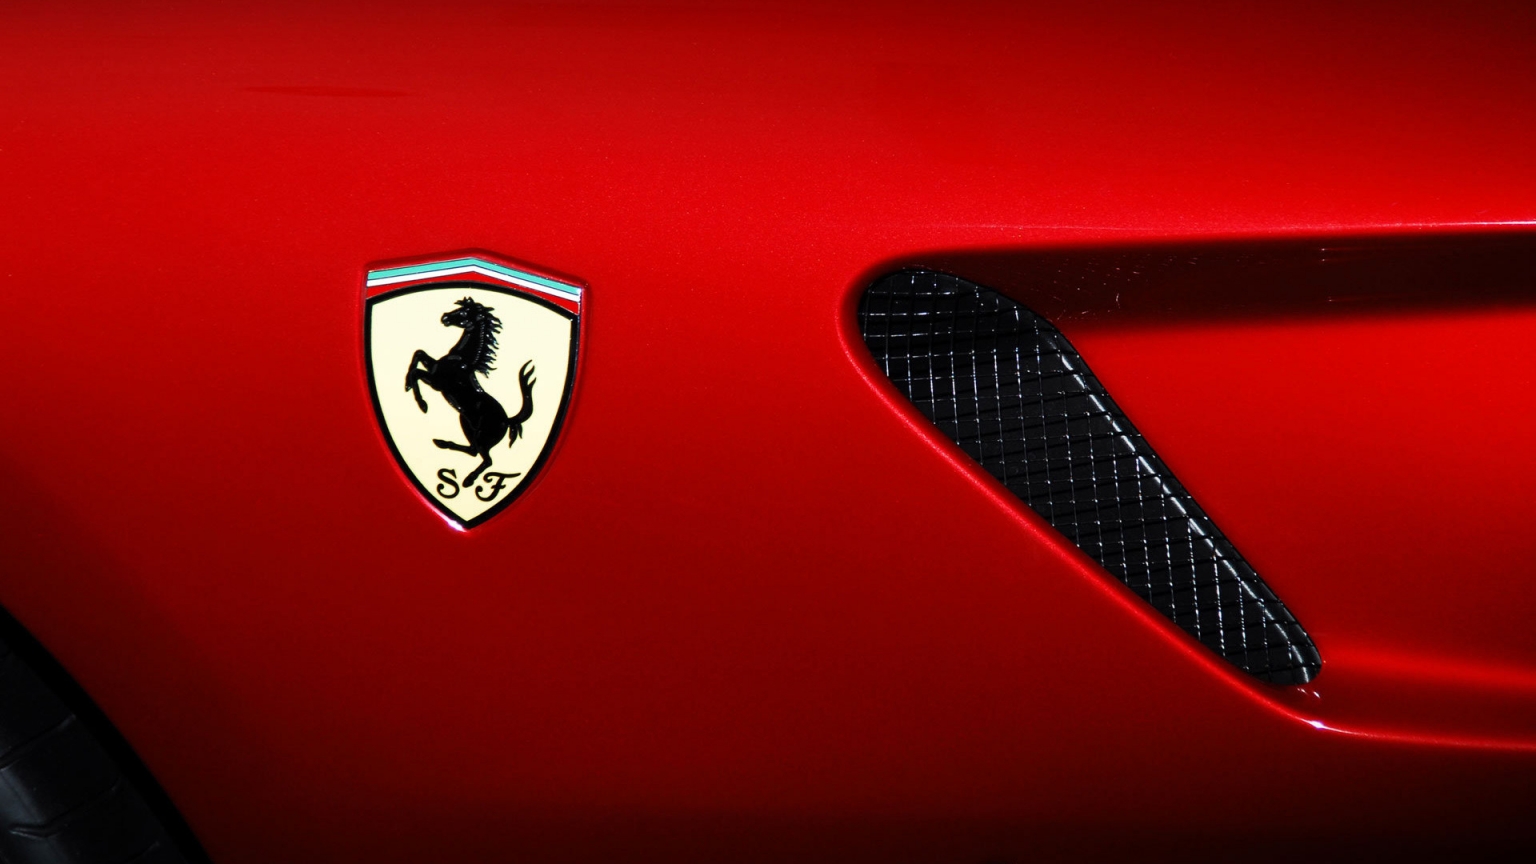 Ferrari Logo for 1536 x 864 HDTV resolution